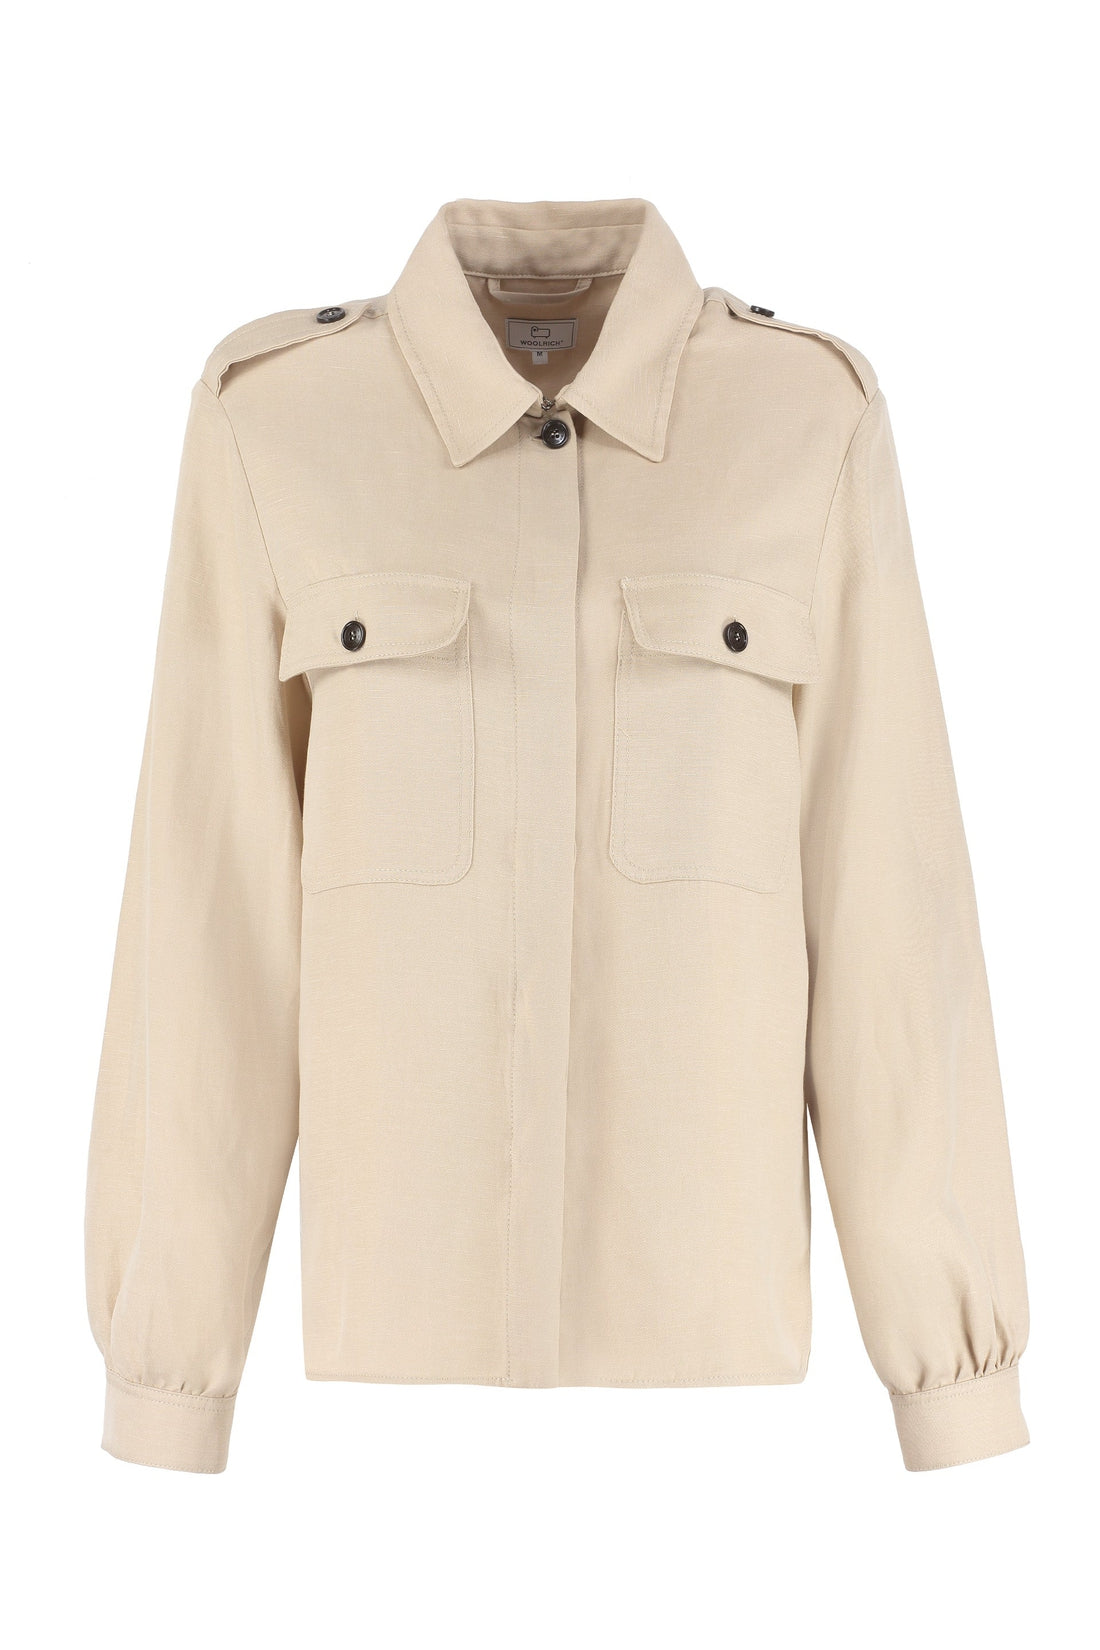 Woolrich-OUTLET-SALE-Long sleeve linen blend shirt-ARCHIVIST